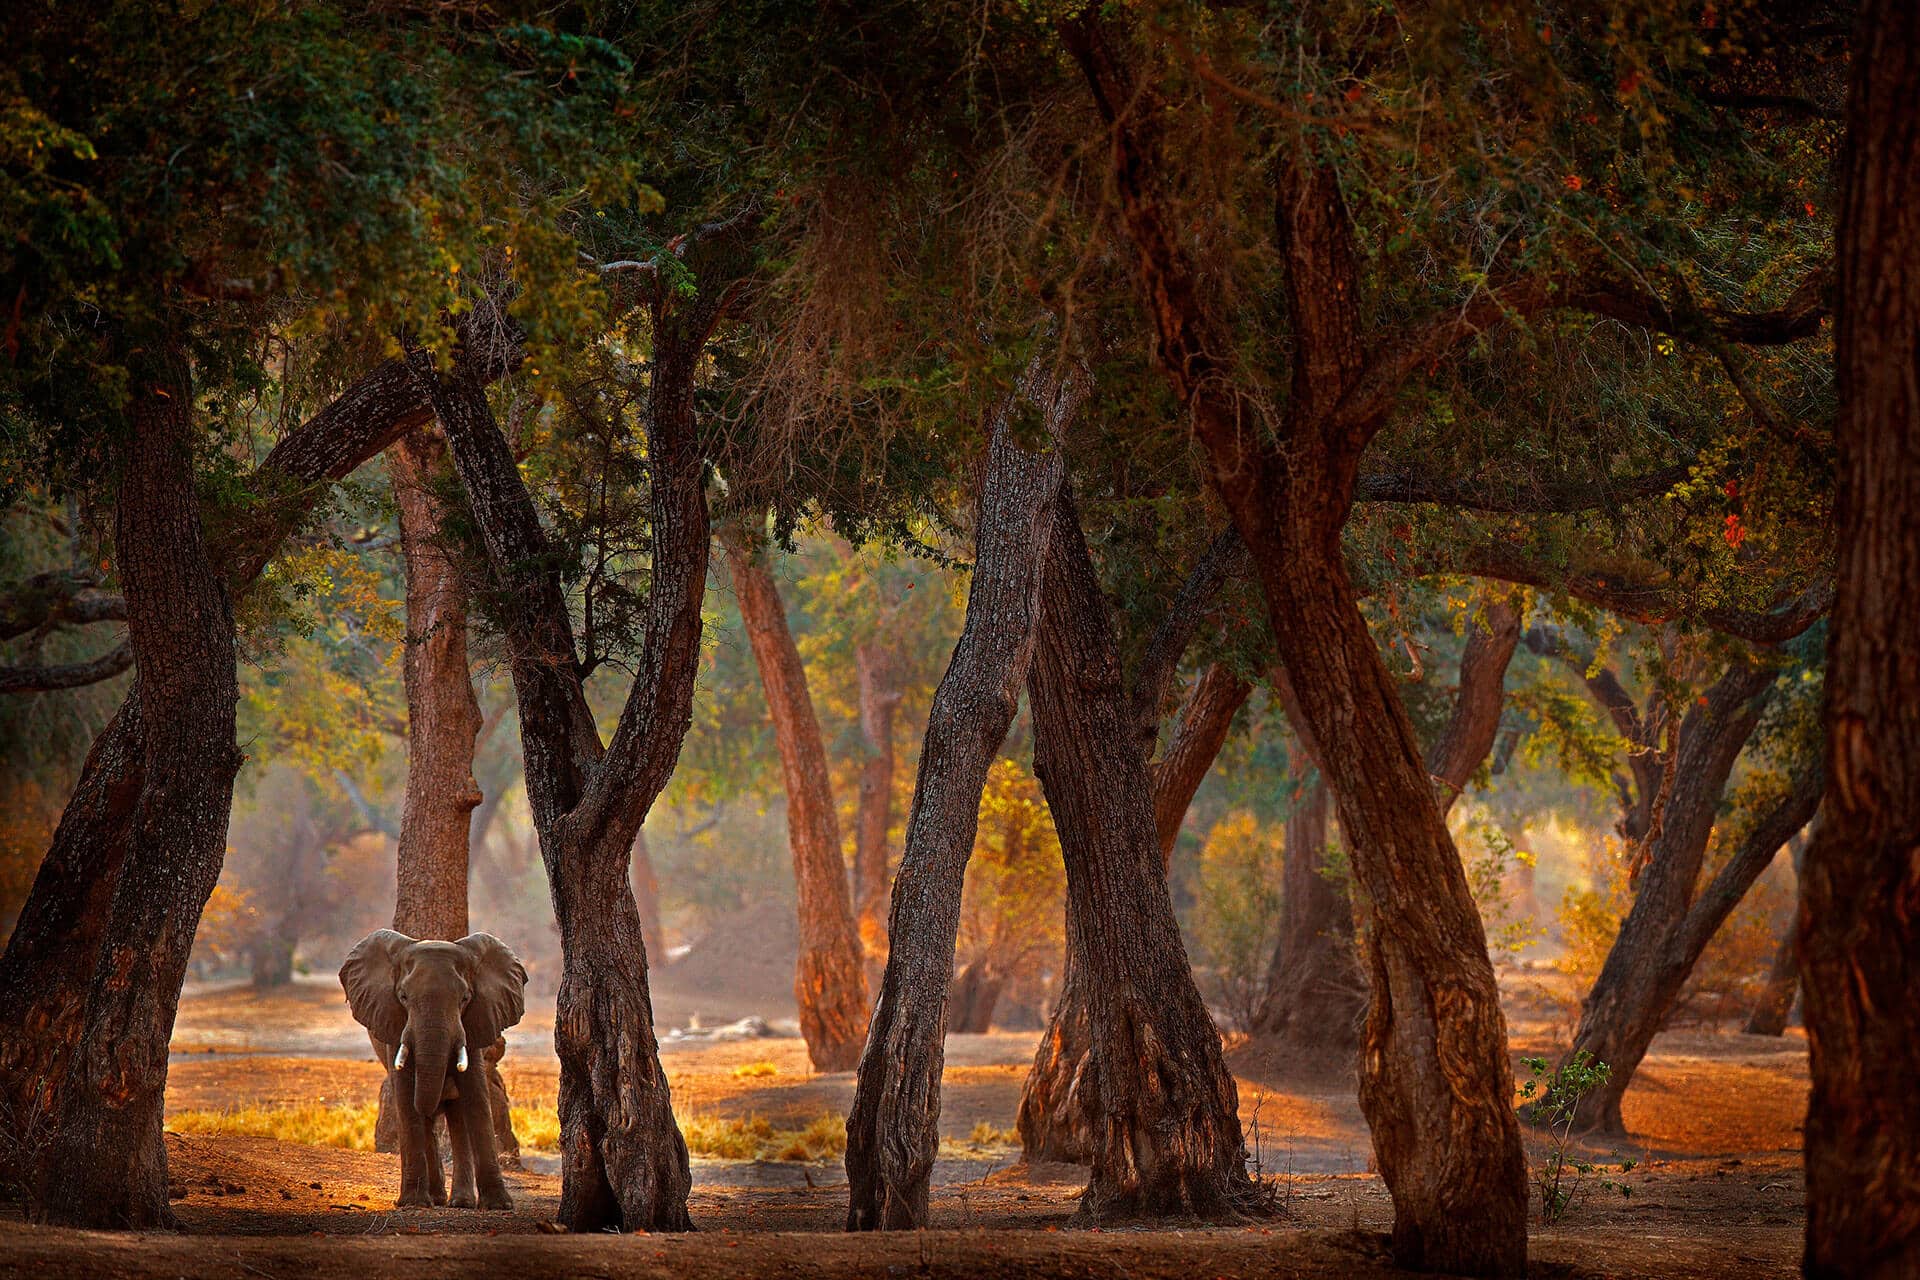 Elephant in Mana Pools, Zimbabwe